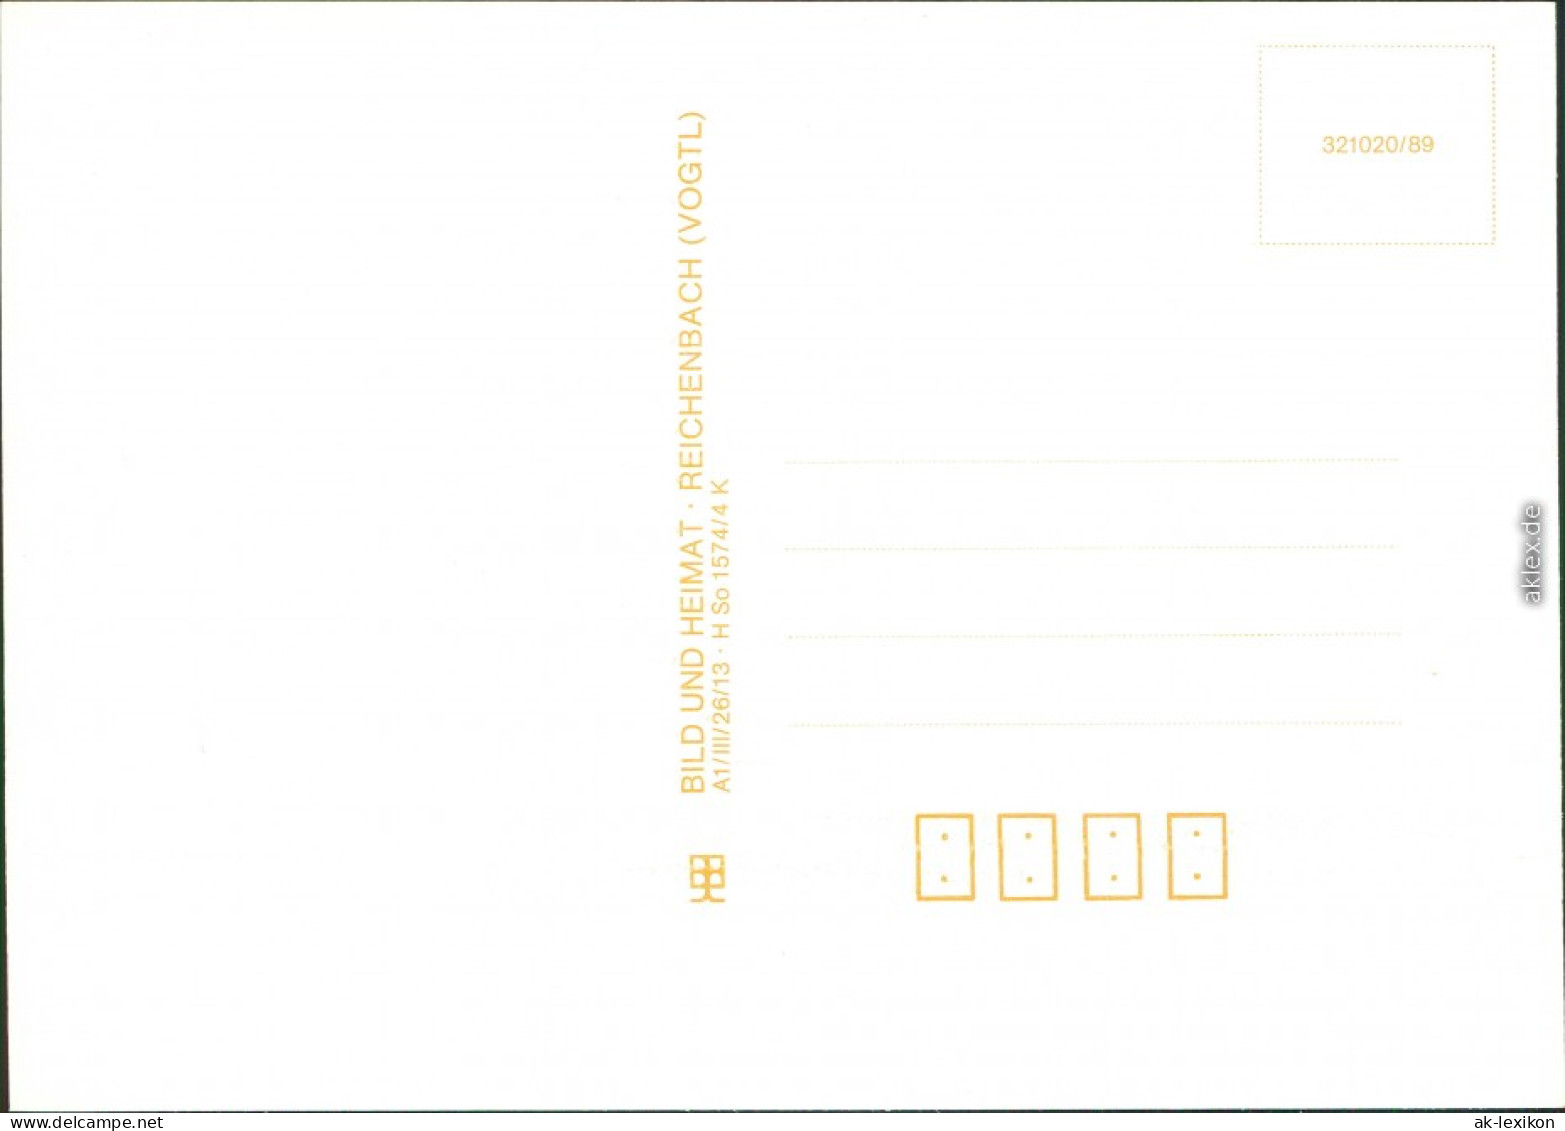 Ansichtskarte  Liedkarten - (unsortiert) - Dr Zefriedne Kiehgung 1989 - Música